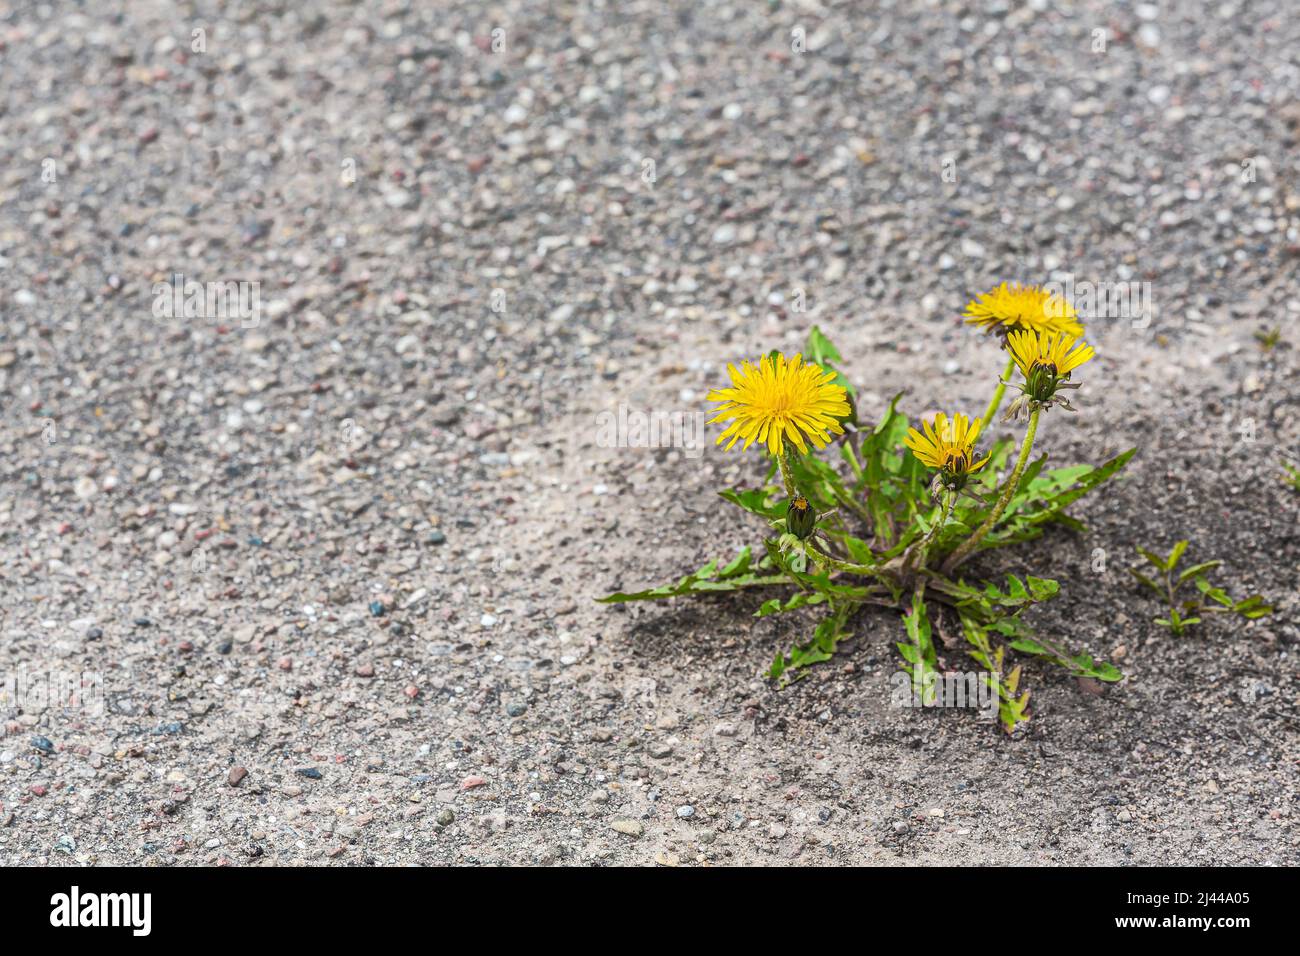 les fleurs de pissenlit jaune de printemps poussent sur fond d'asphalte gris. symbole de force et de vitalité. concept écologique. Banque D'Images